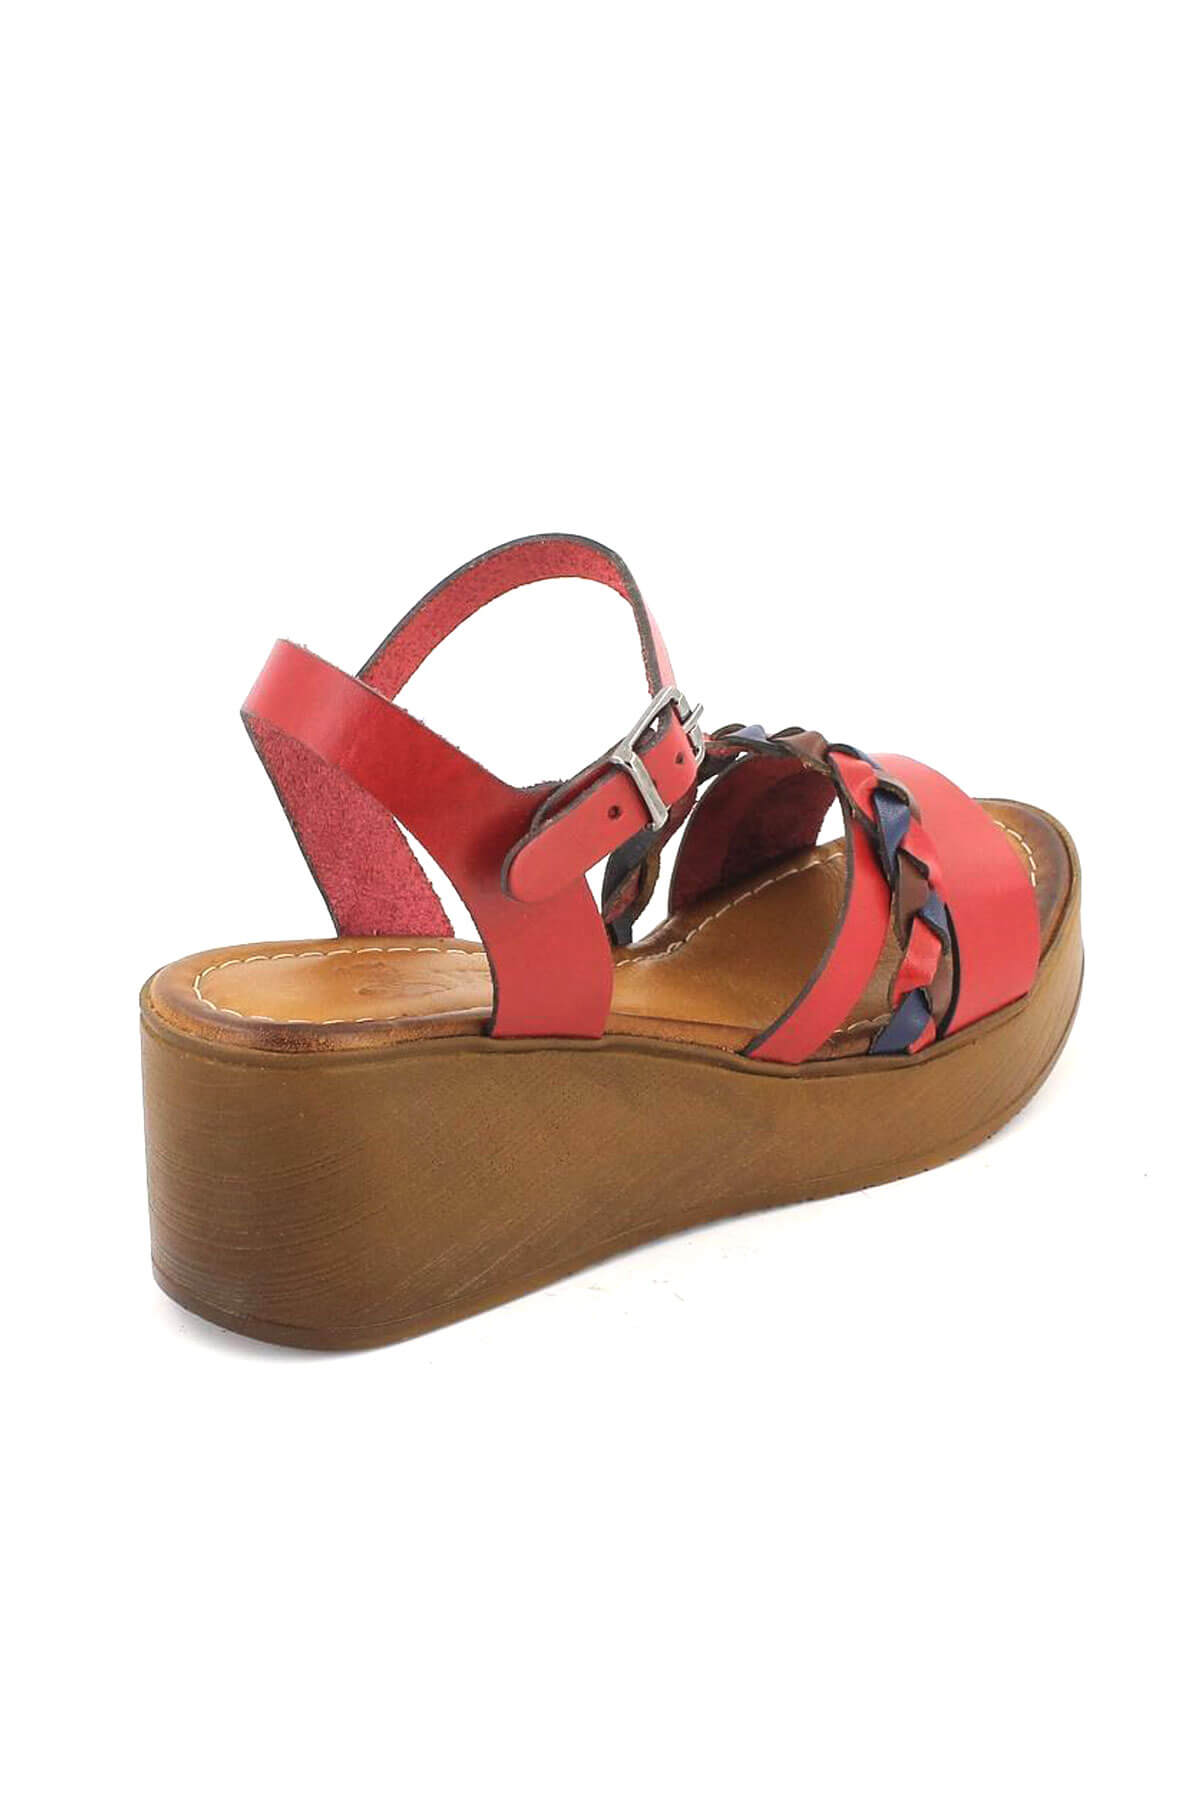 Kadın Deri Dolgu Topuk Sandalet Kırmızı 21983400